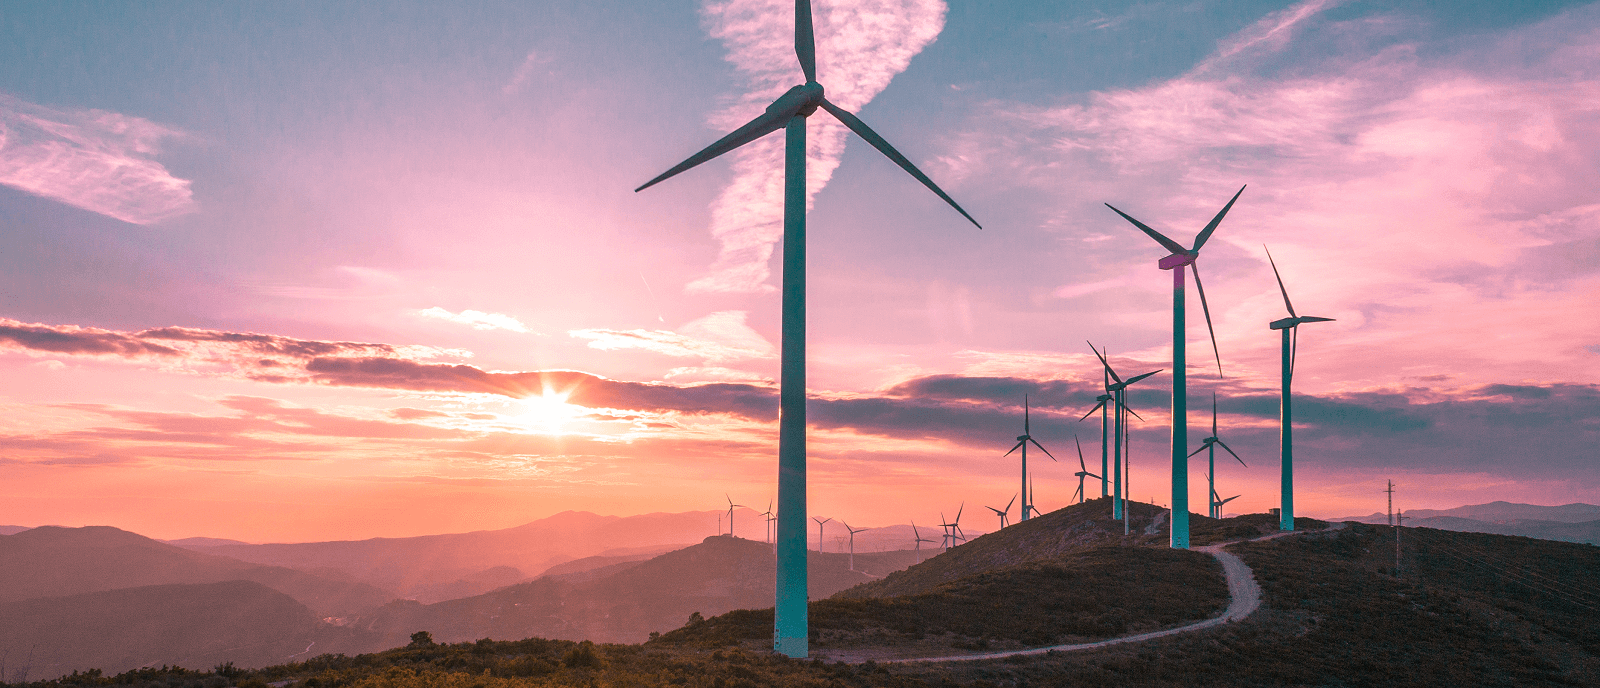 Éoliennes dans un paysage de montagne violet 